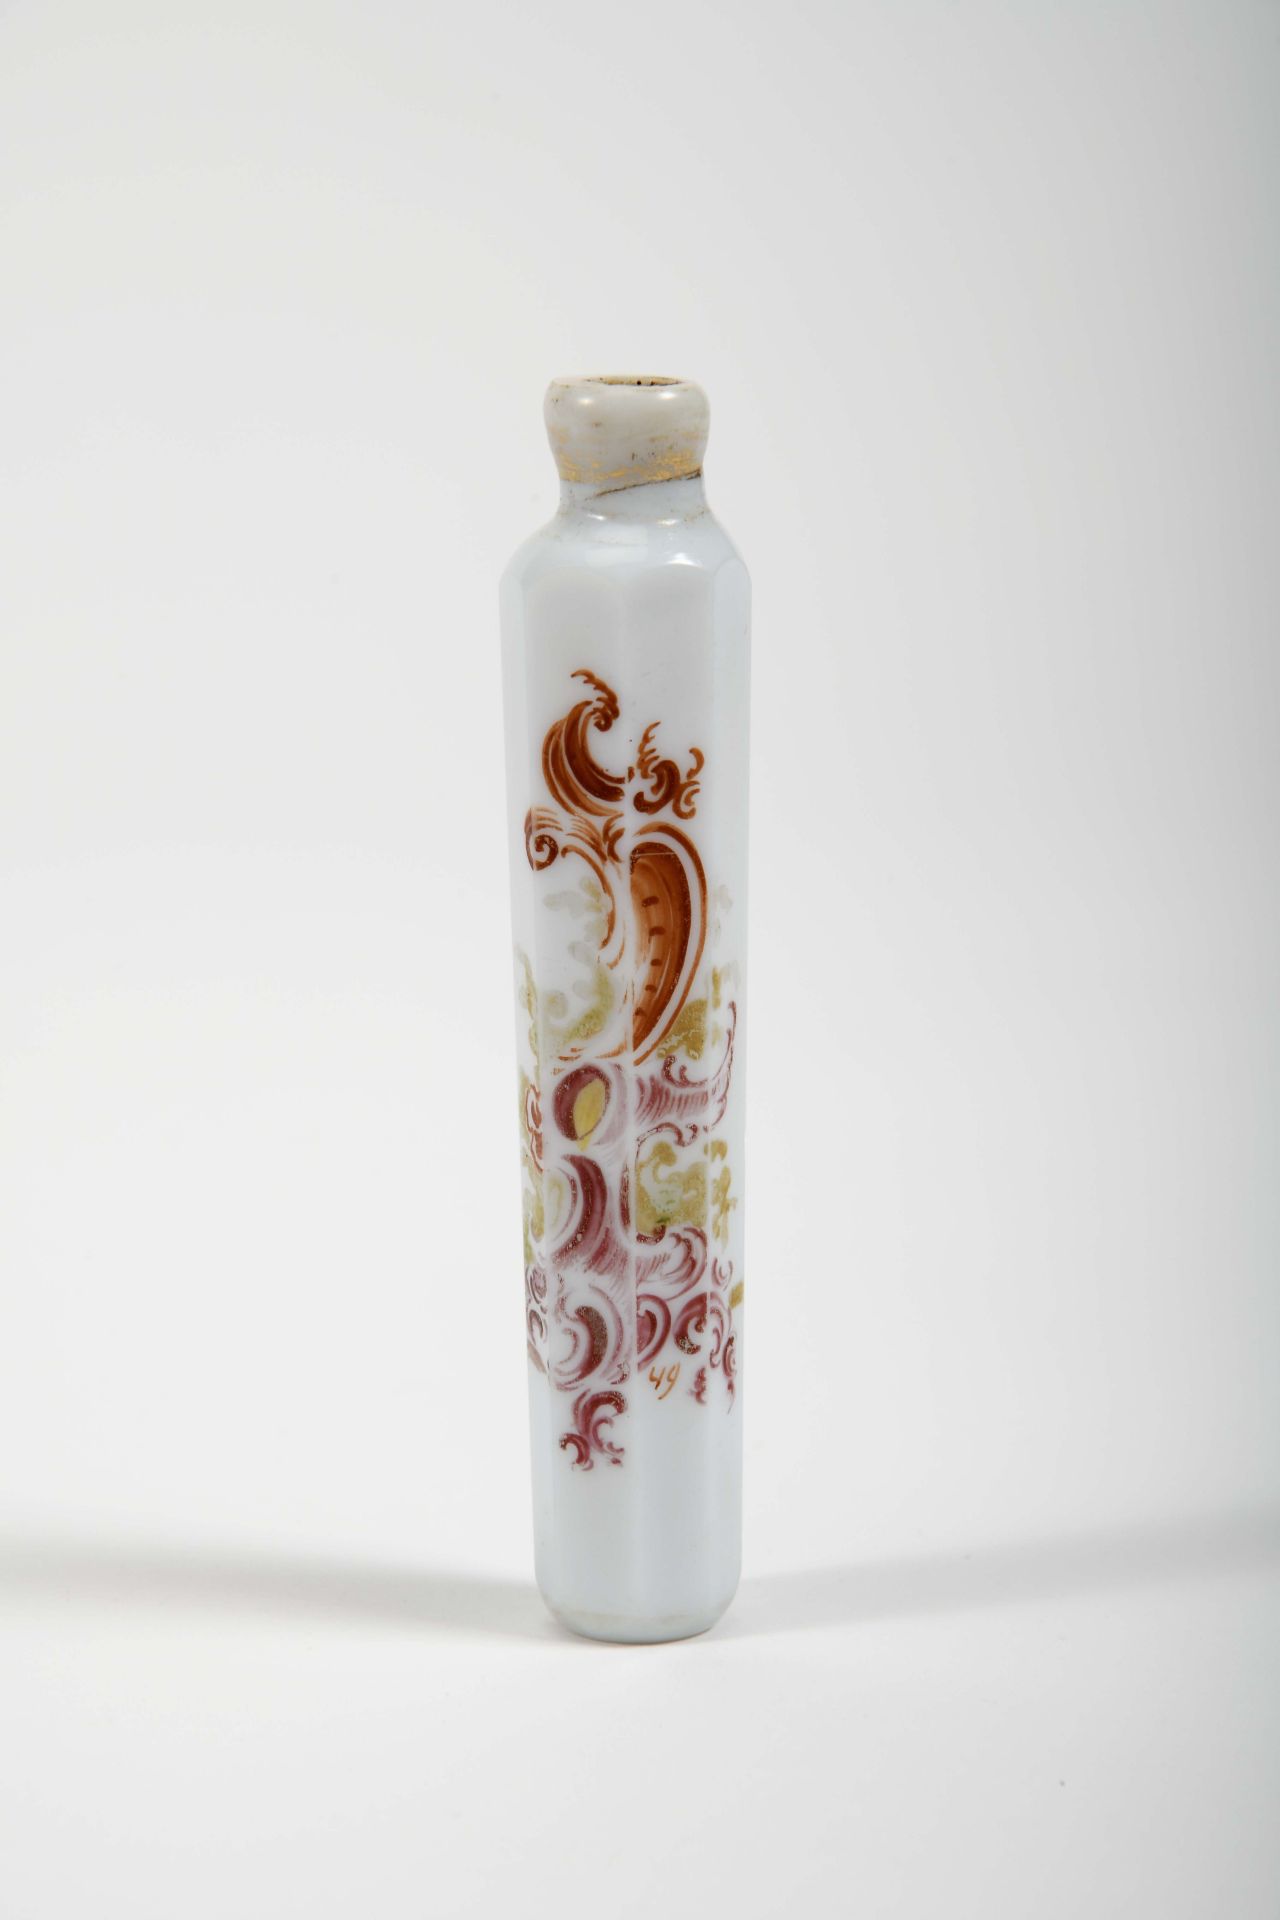 An octagonal perfume bottle